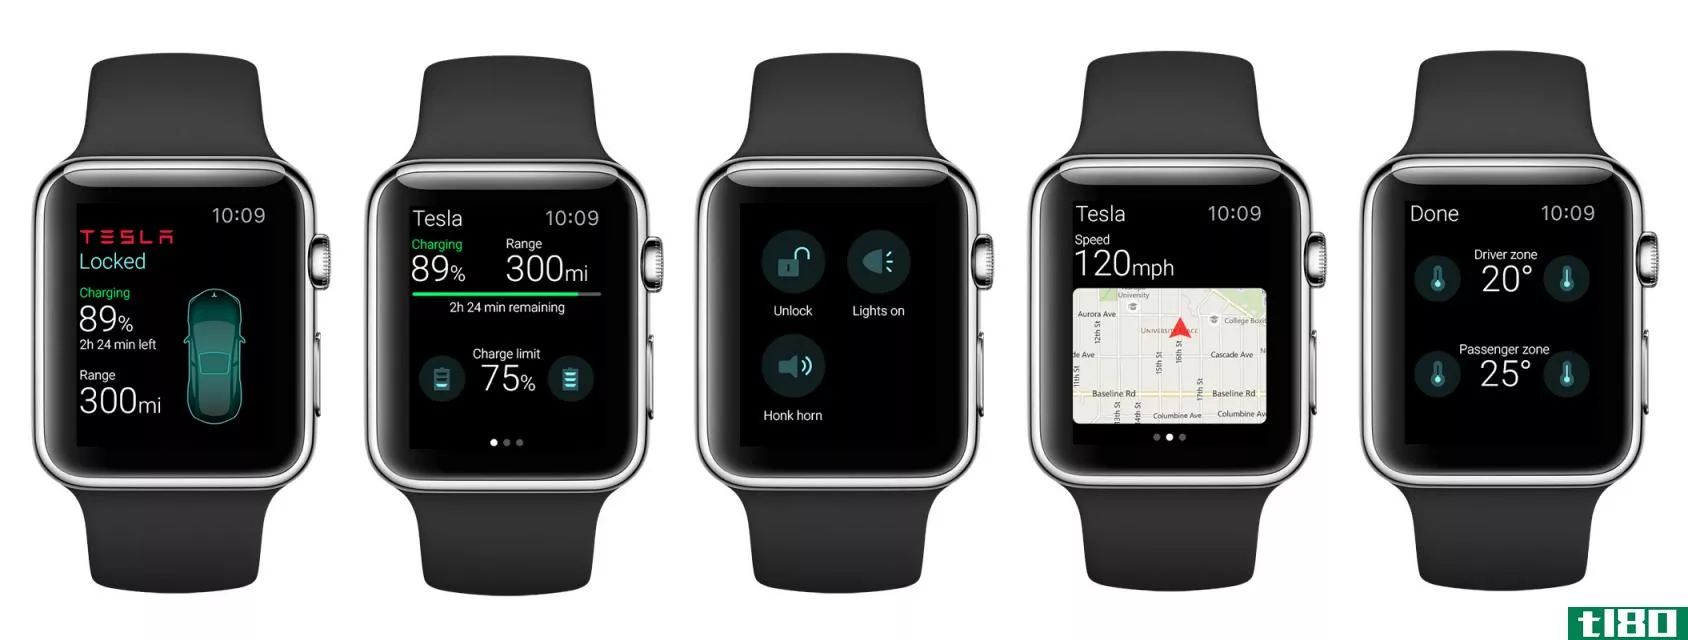 苹果手表应用特斯拉和todoist显示承诺